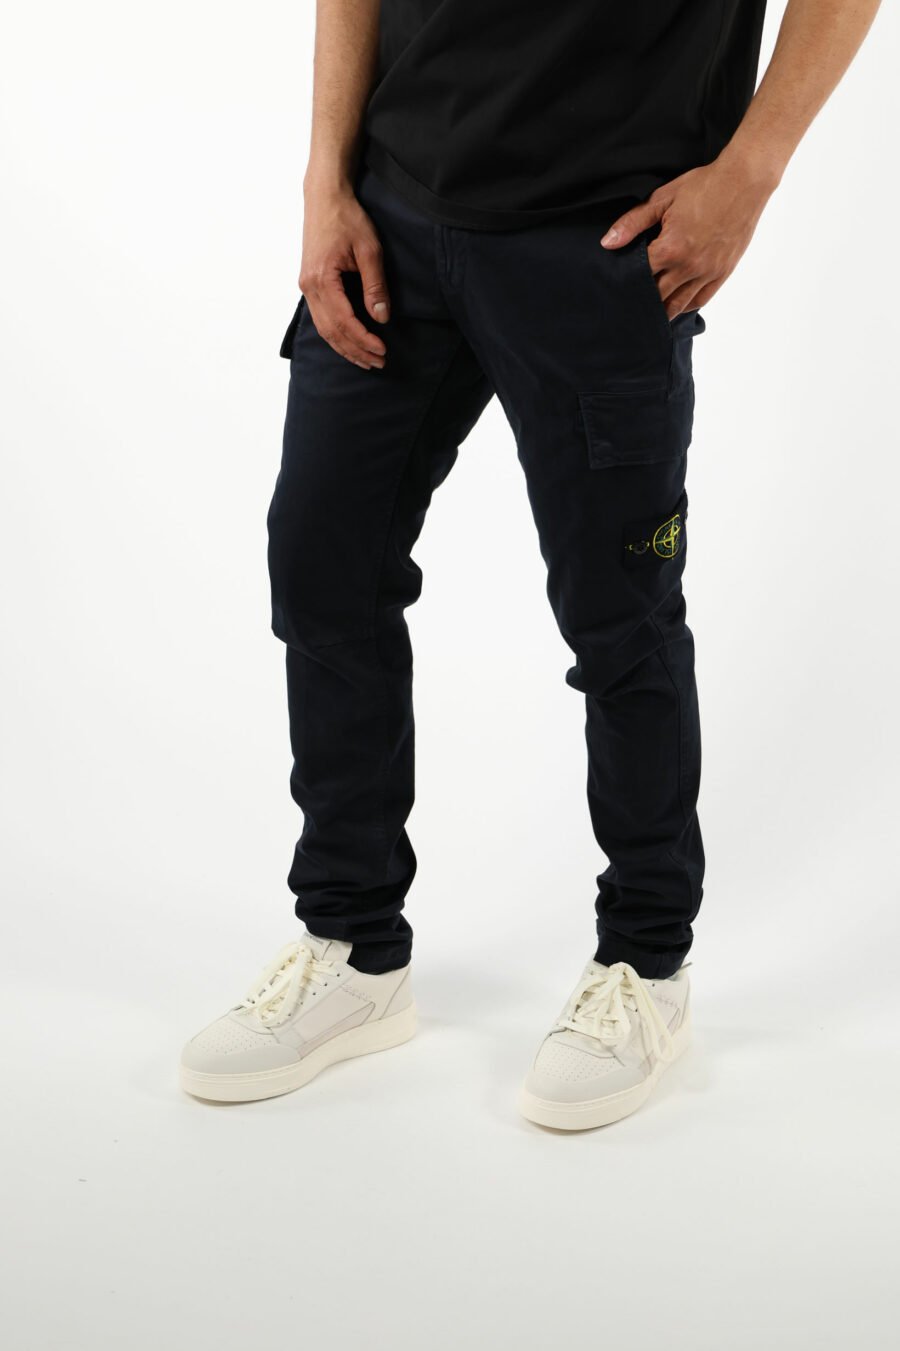 Pantalón azul oscuro "skinny" estilo cargo con logo parche brújula - 111404